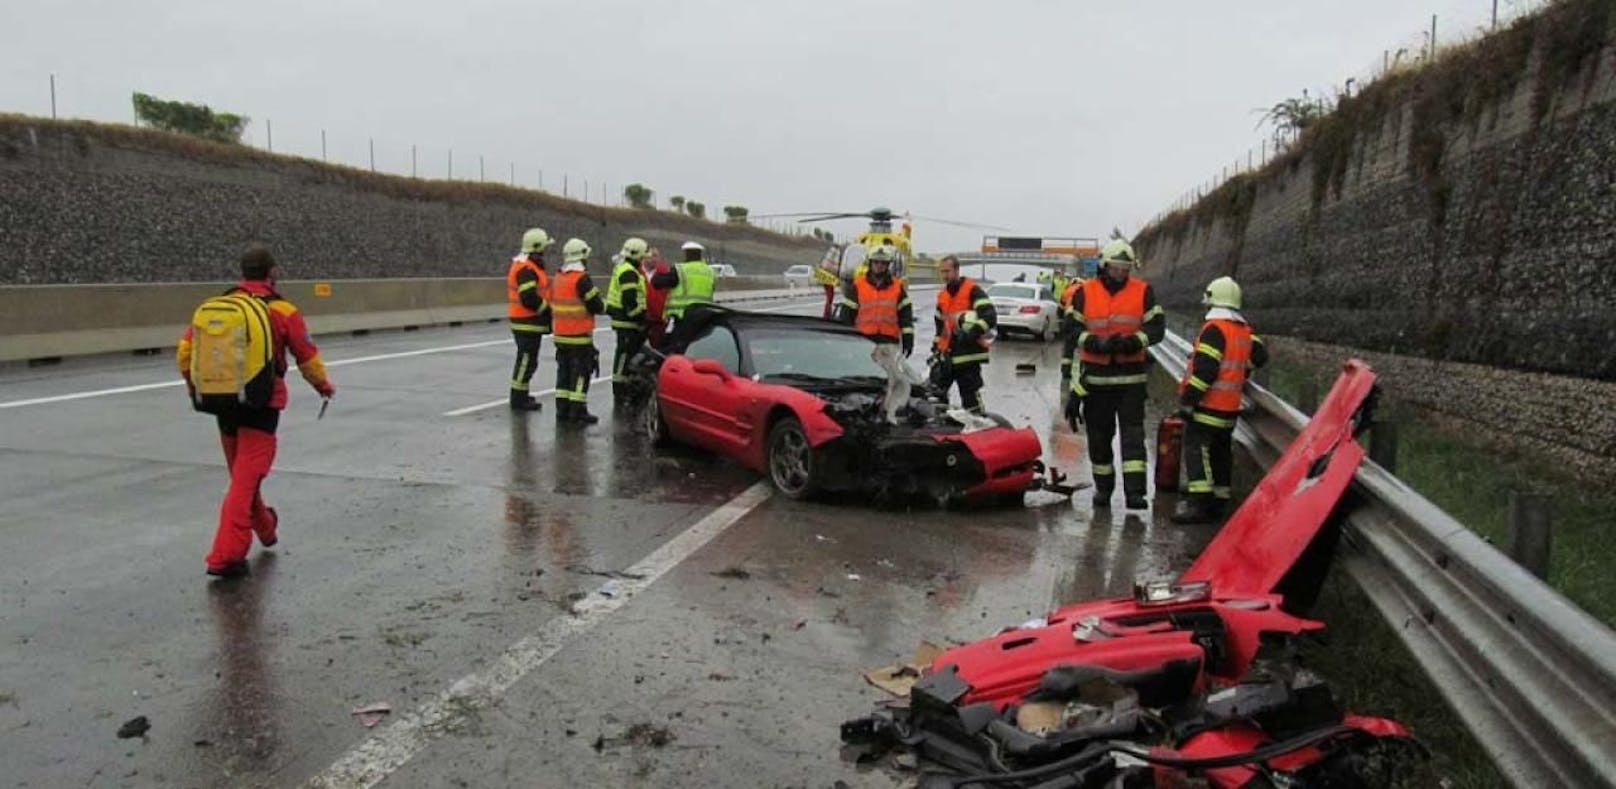 Regen: Corvette knallt auf der A5 in Leitschiene